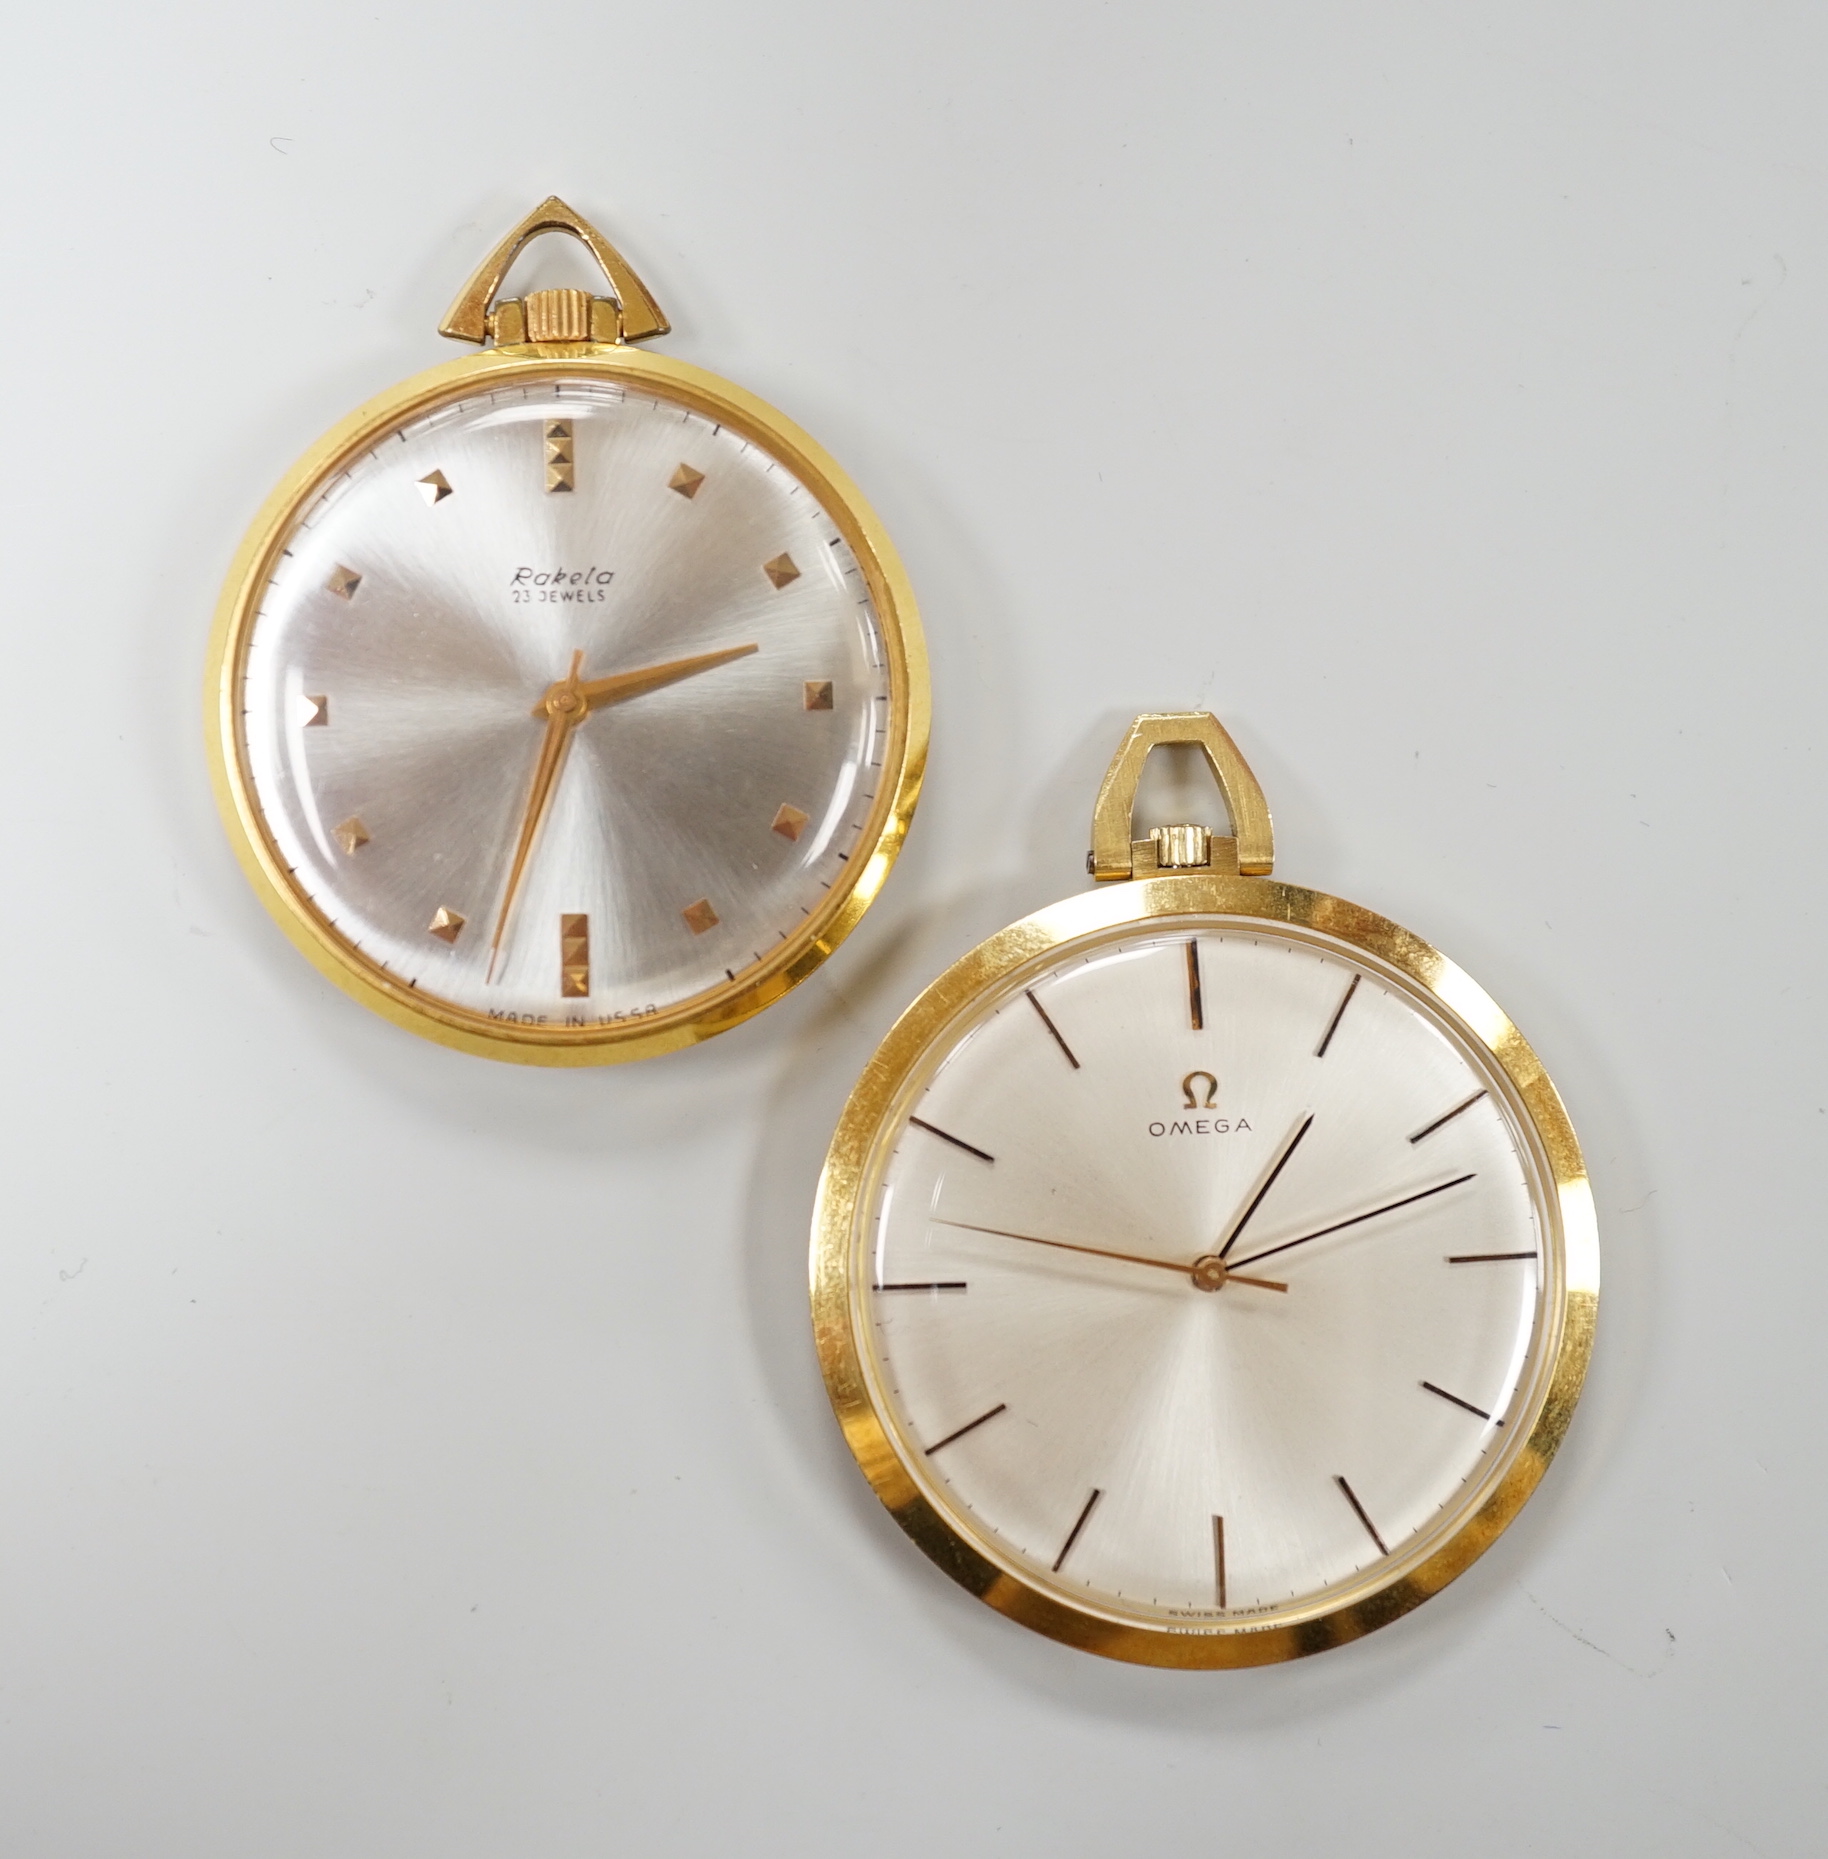 A 750 yellow metal Omega open faced keyless dress pocket watch, case diameter 42mm, gross weight 43.1 grams and a Rukela dress pocket watch.